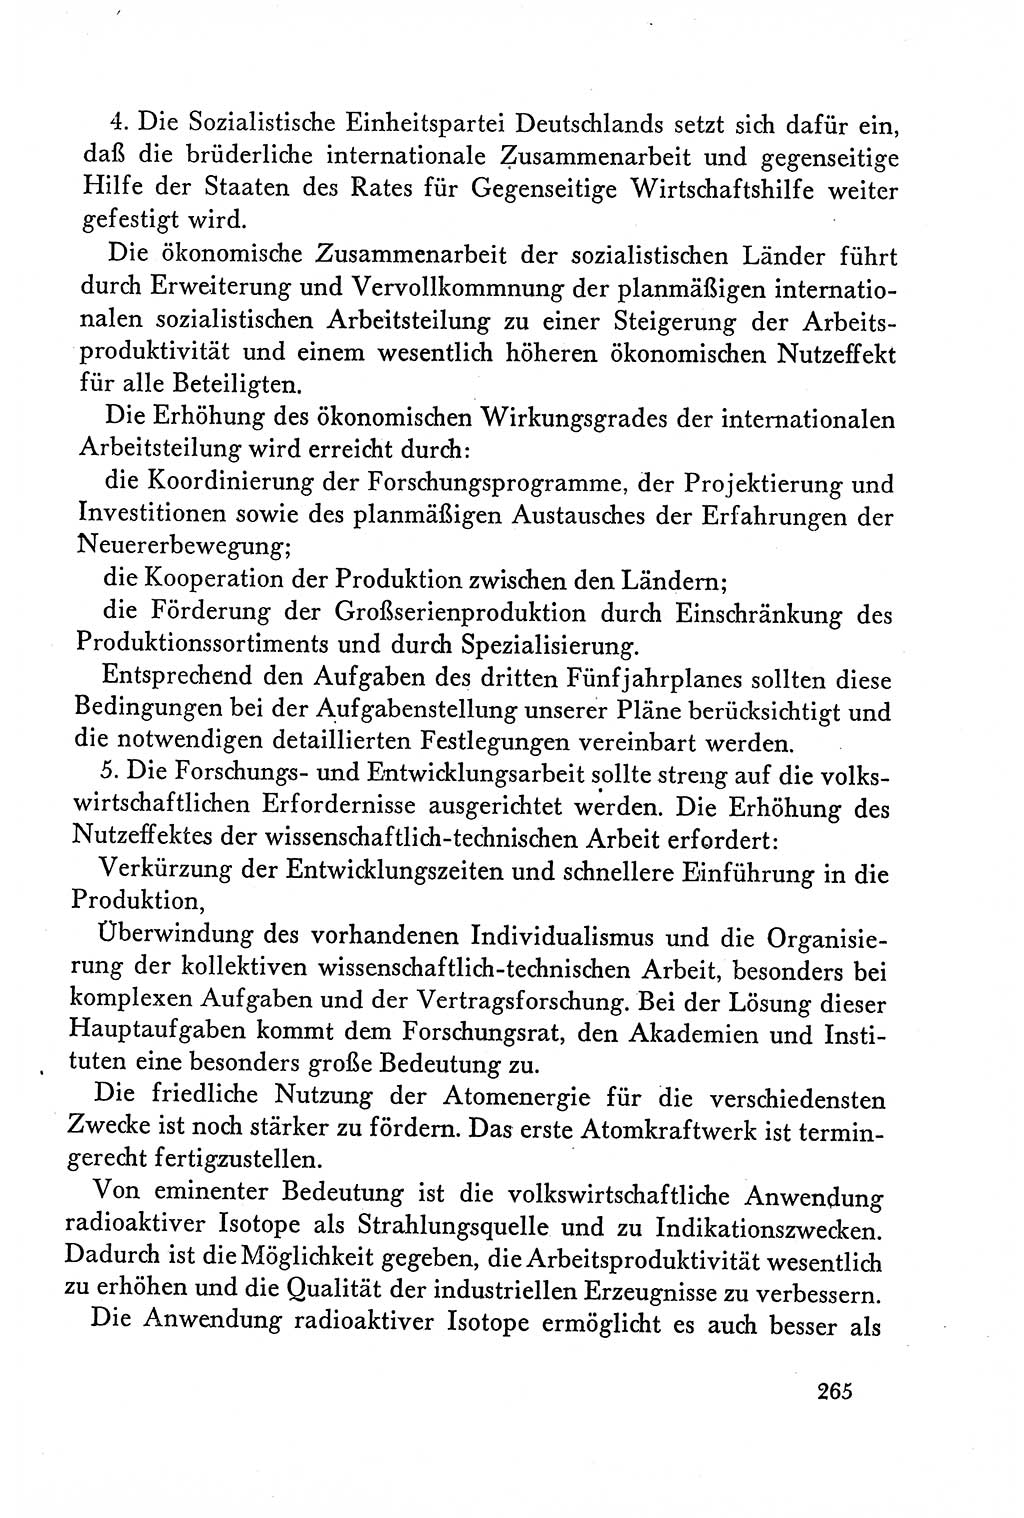 Dokumente der Sozialistischen Einheitspartei Deutschlands (SED) [Deutsche Demokratische Republik (DDR)] 1958-1959, Seite 265 (Dok. SED DDR 1958-1959, S. 265)